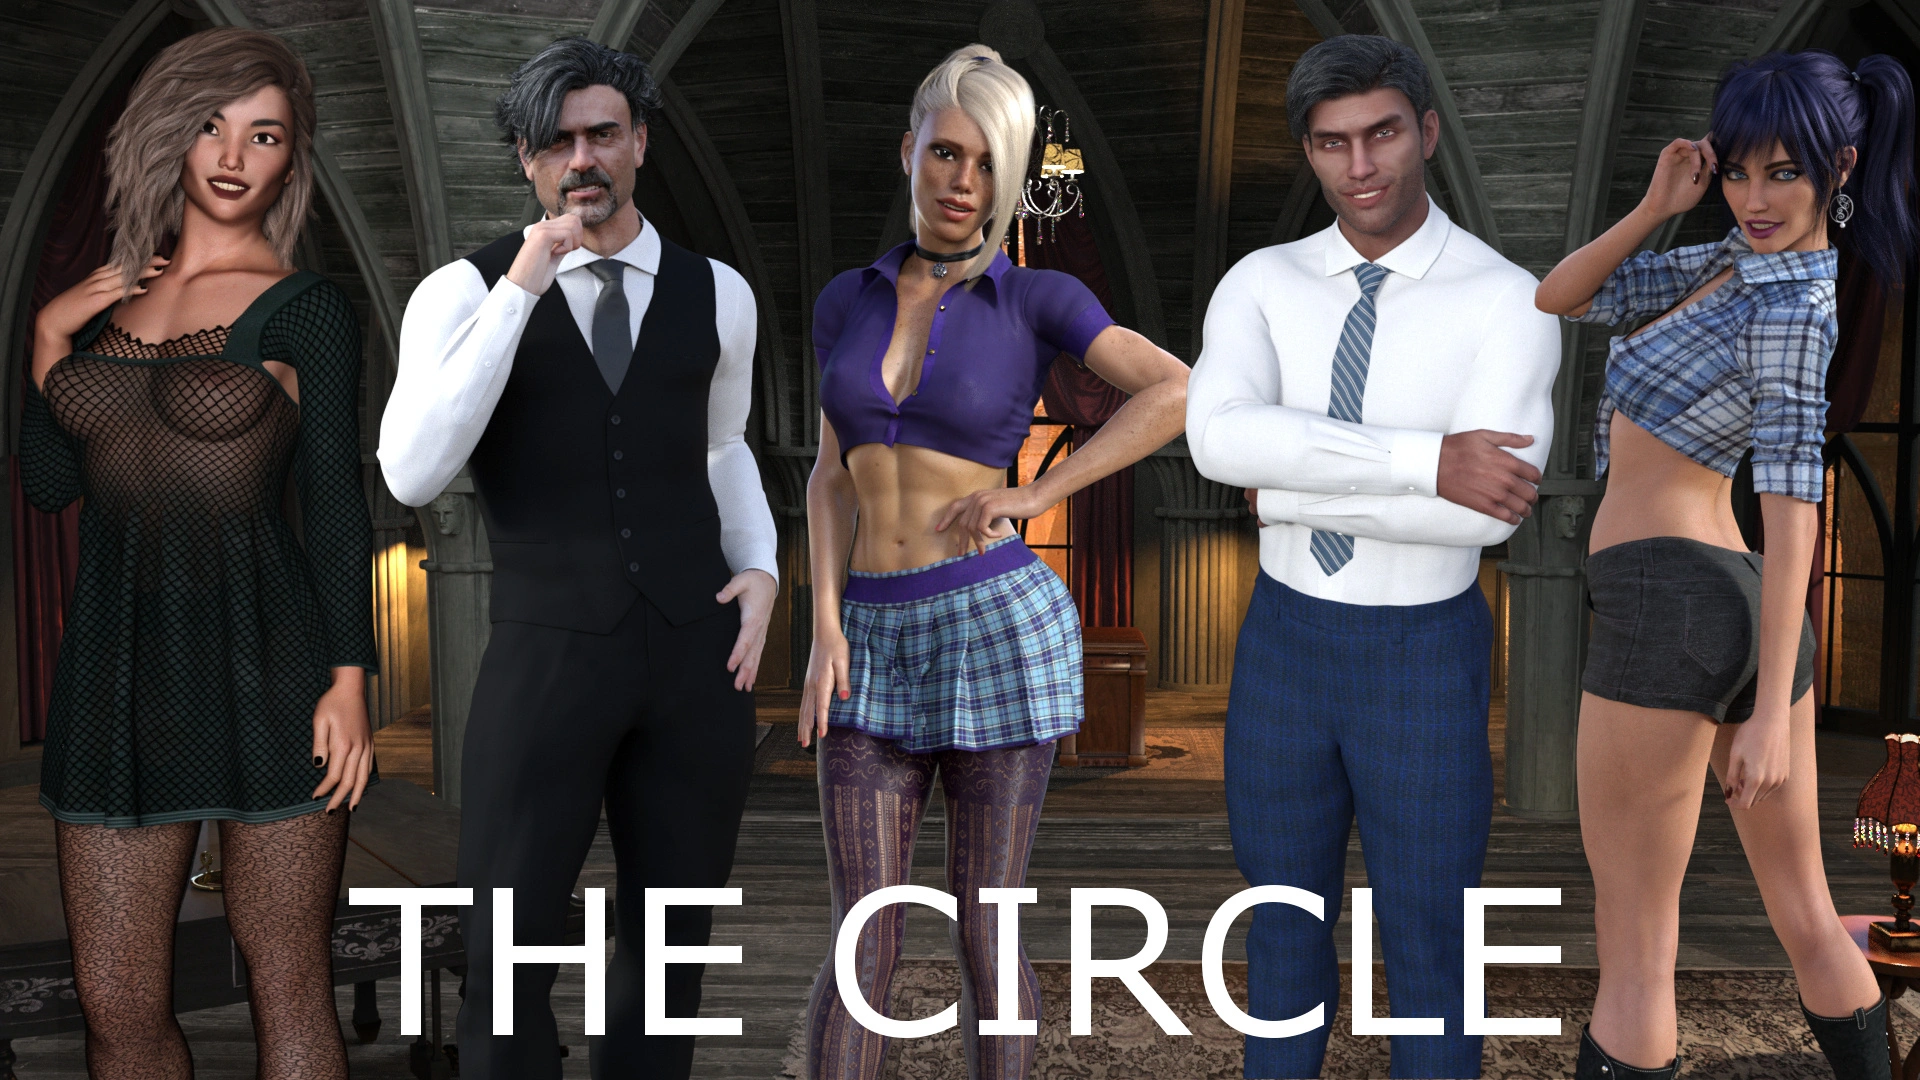 The Circle [v0.1] main image